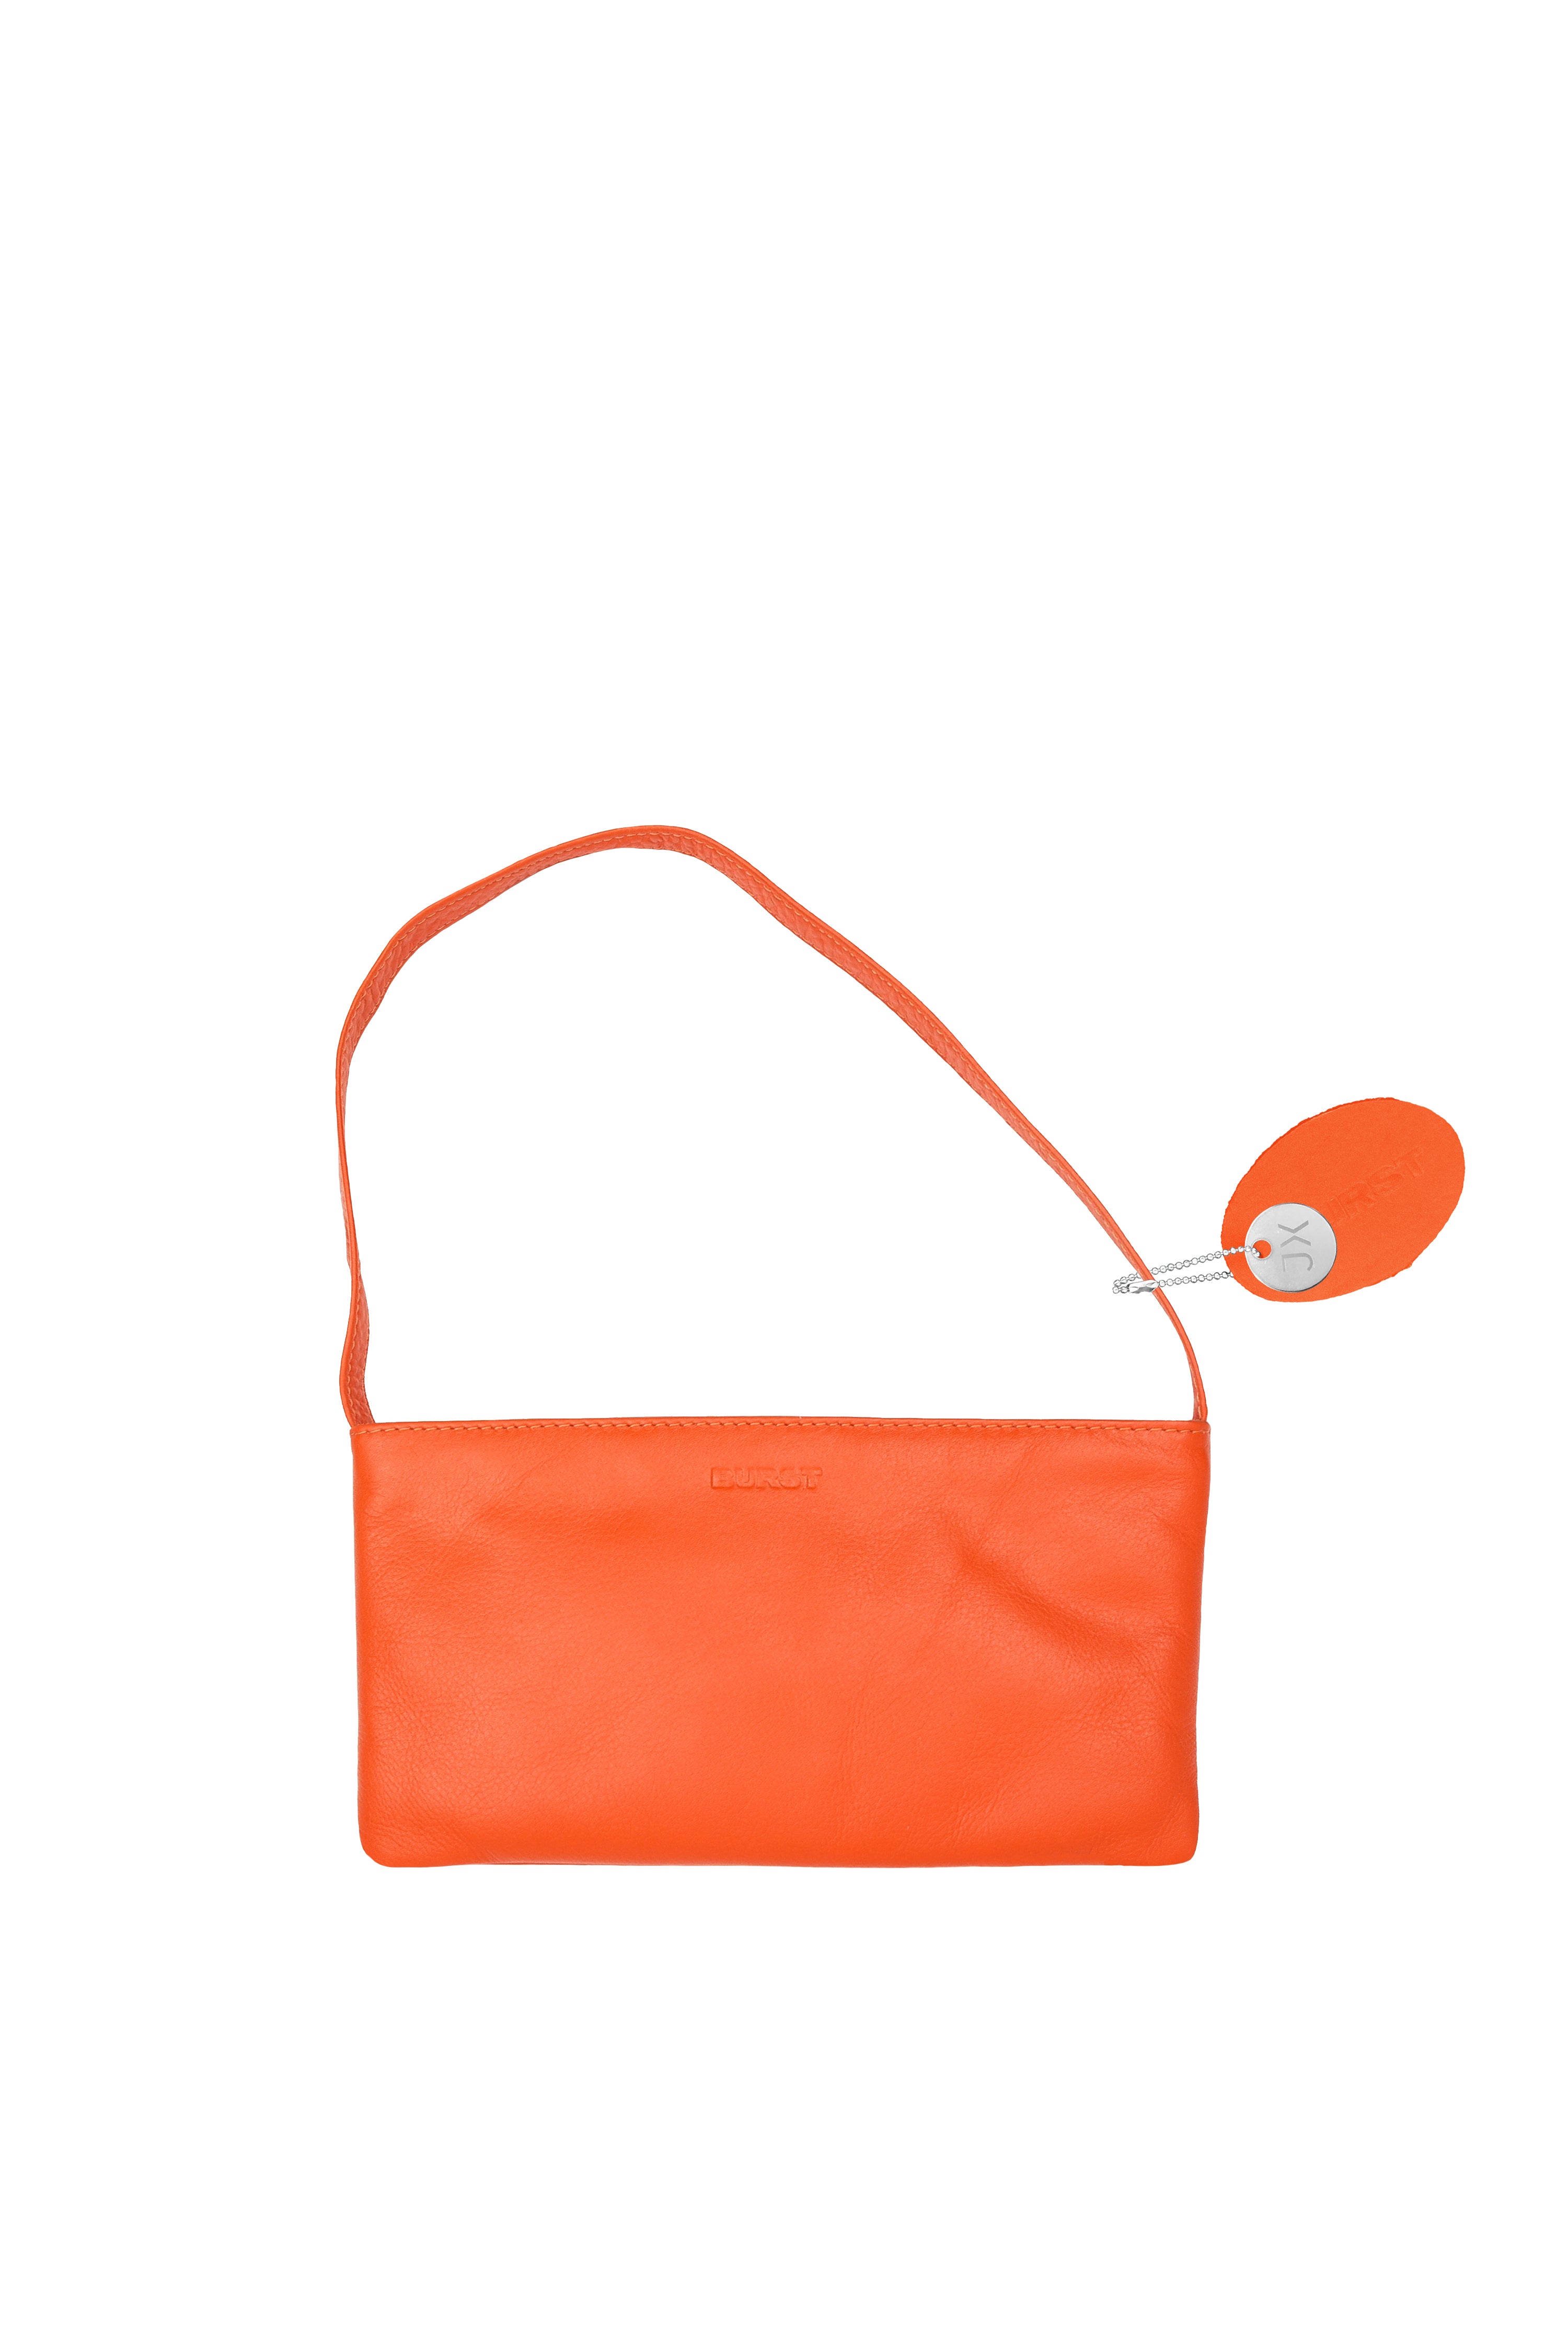 Small slim leather handbag, vivid orange. Vivid light orange lining and stitches. Upcycled, sustainable.